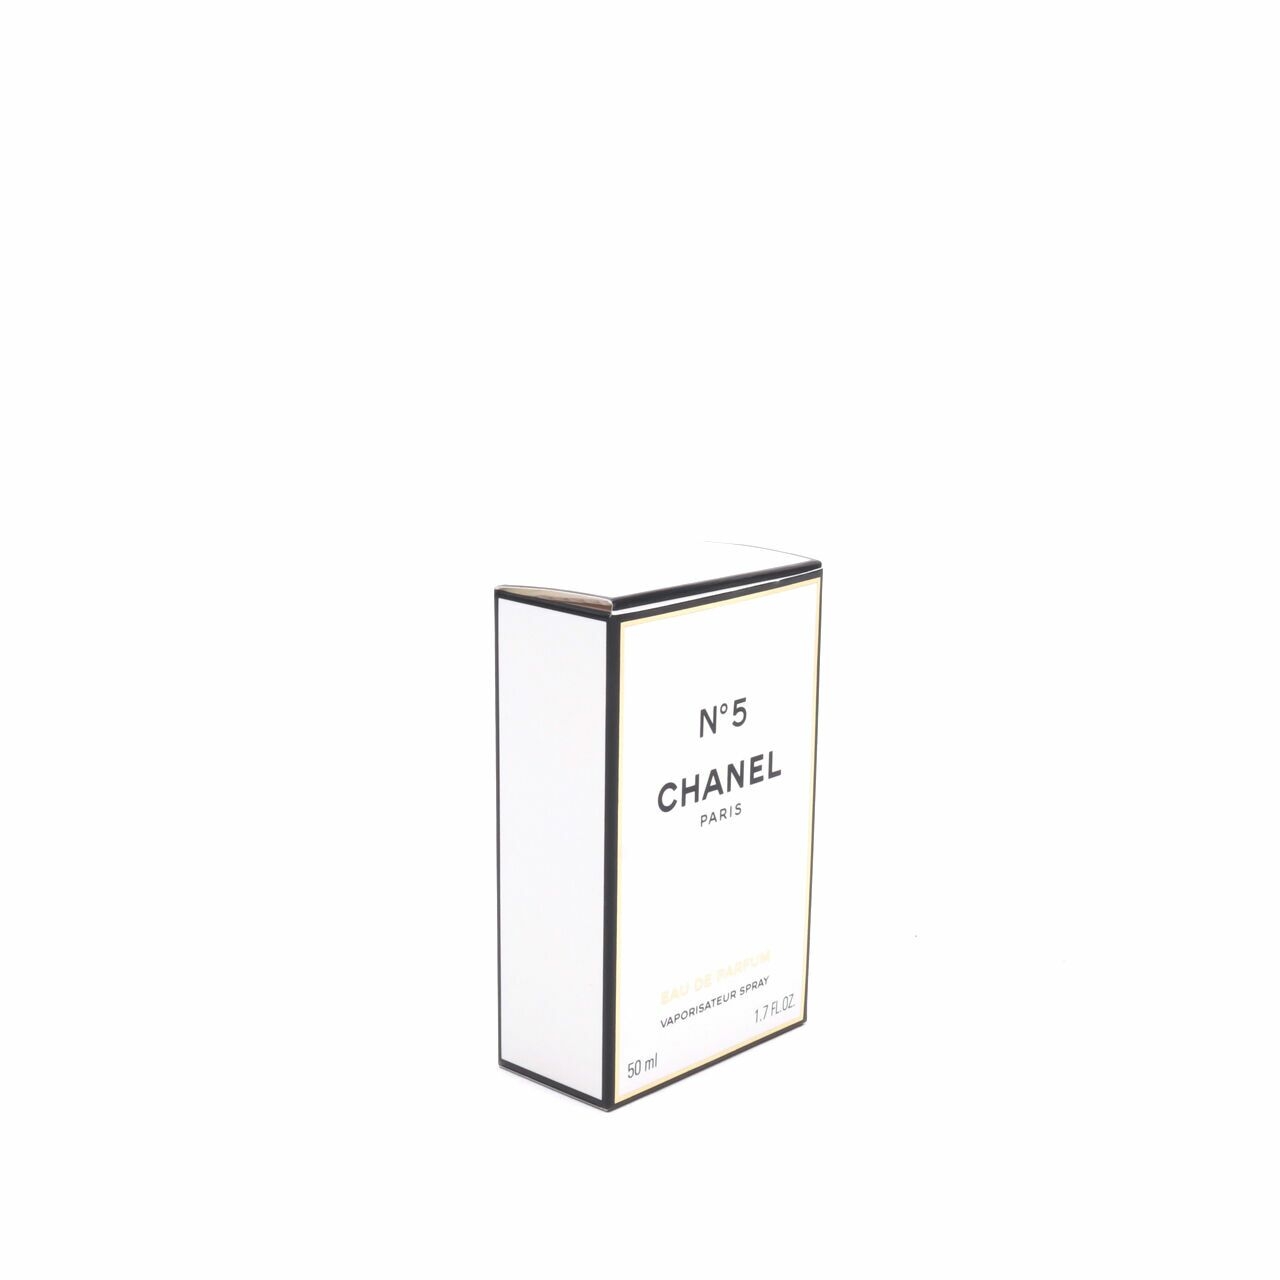 Chanel Eau De Parfum Vaporisateur Spray Fragrance